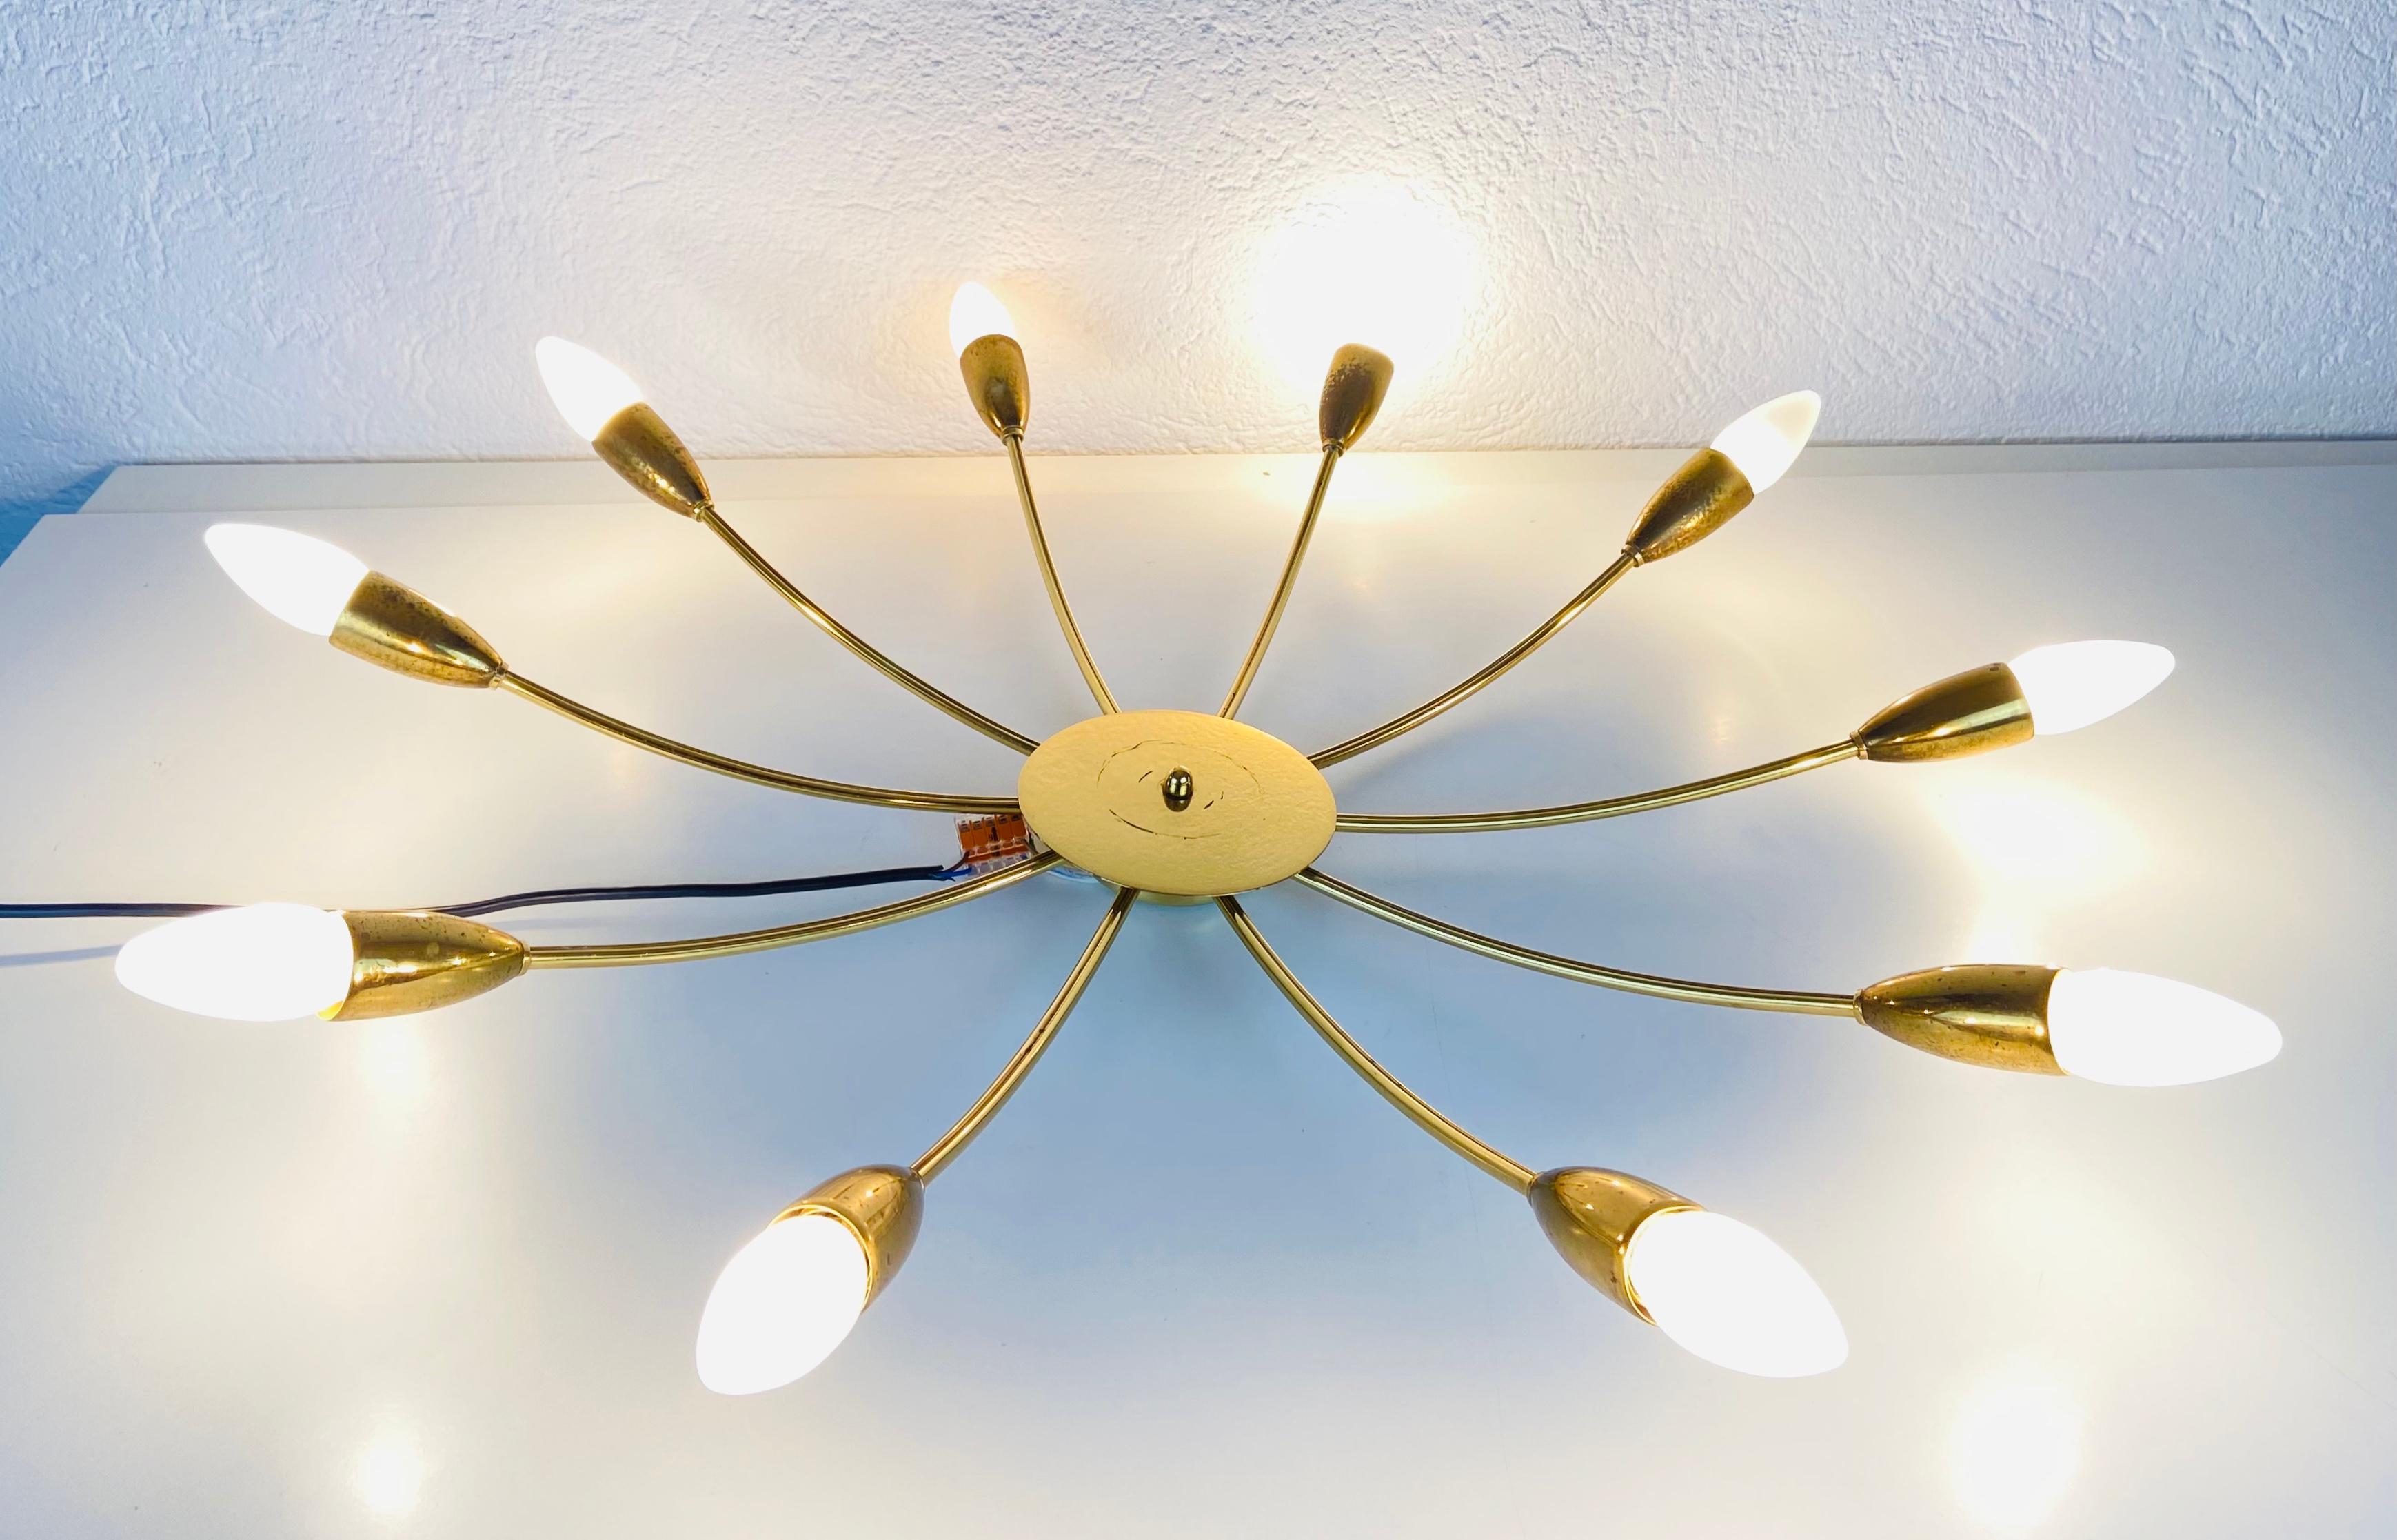 Un lustre Sputnik fabriqué en Allemagne dans les années 1950. Il est fascinant avec ses dix bras en laiton, chacun d'entre eux portant une ampoule E14. La forme de la lumière est semblable à celle d'une araignée.

Le luminaire nécessite 10